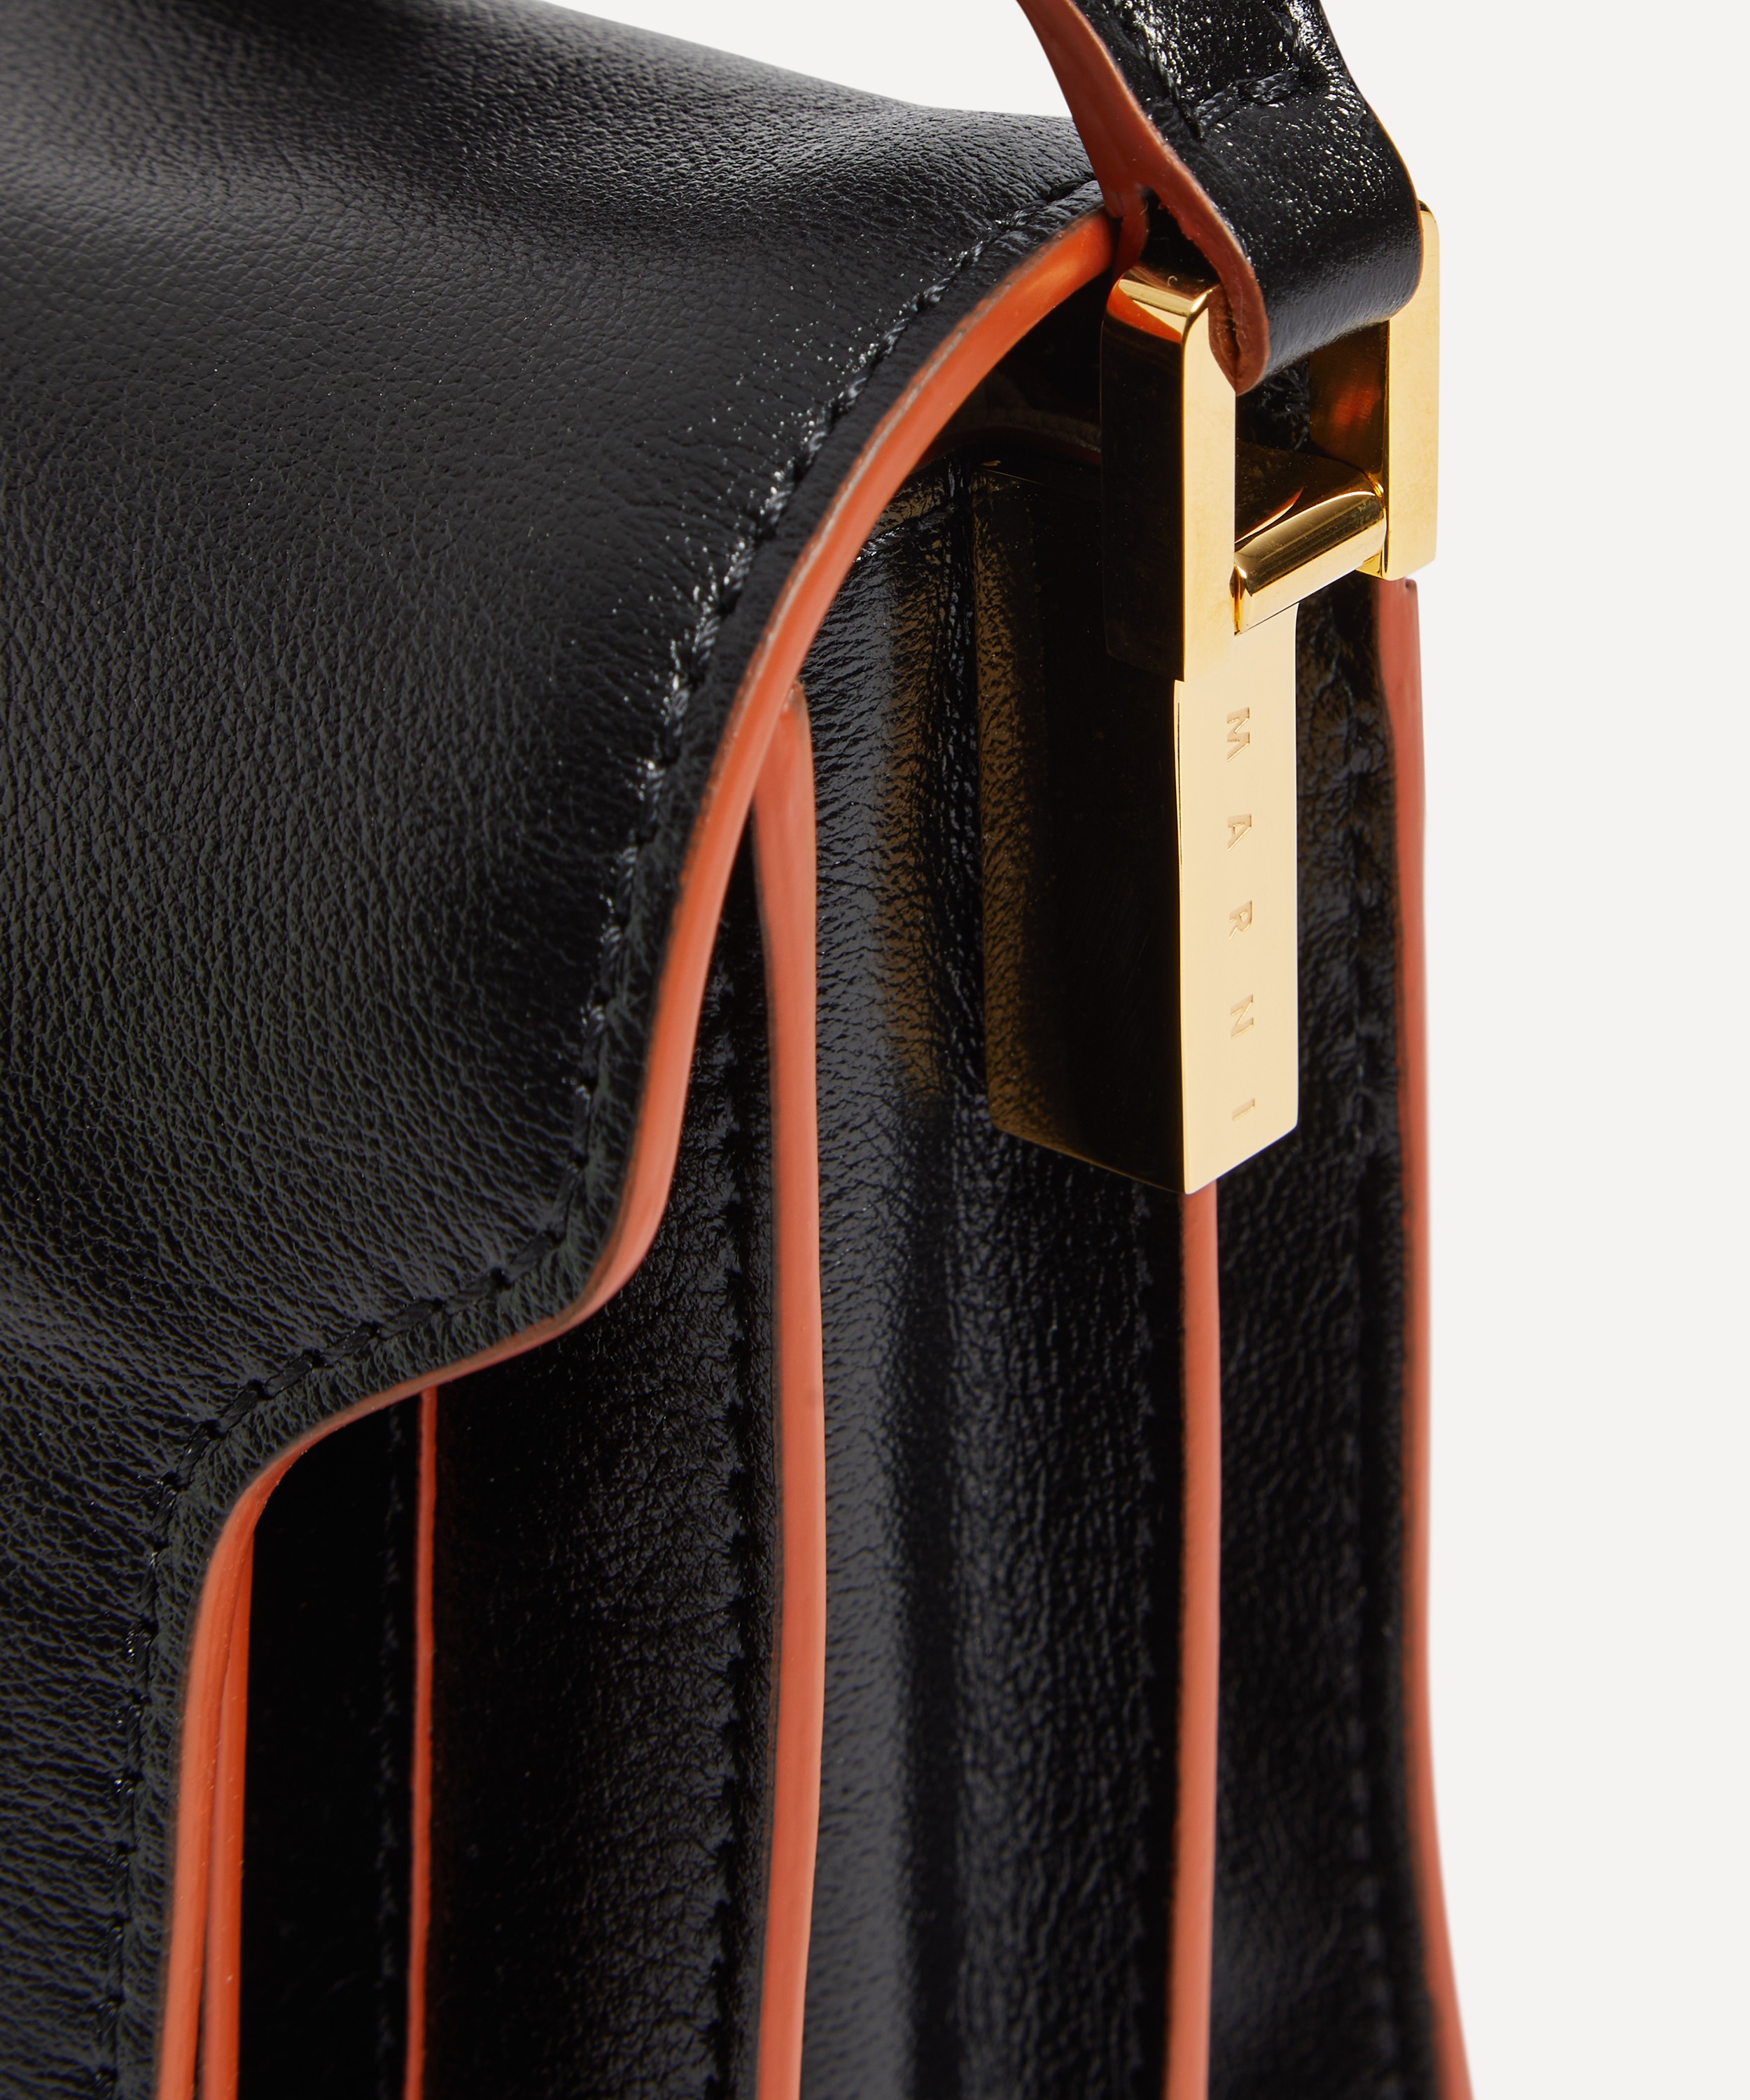 Marni Trunk Soft Medium Leather Shoulder Bag